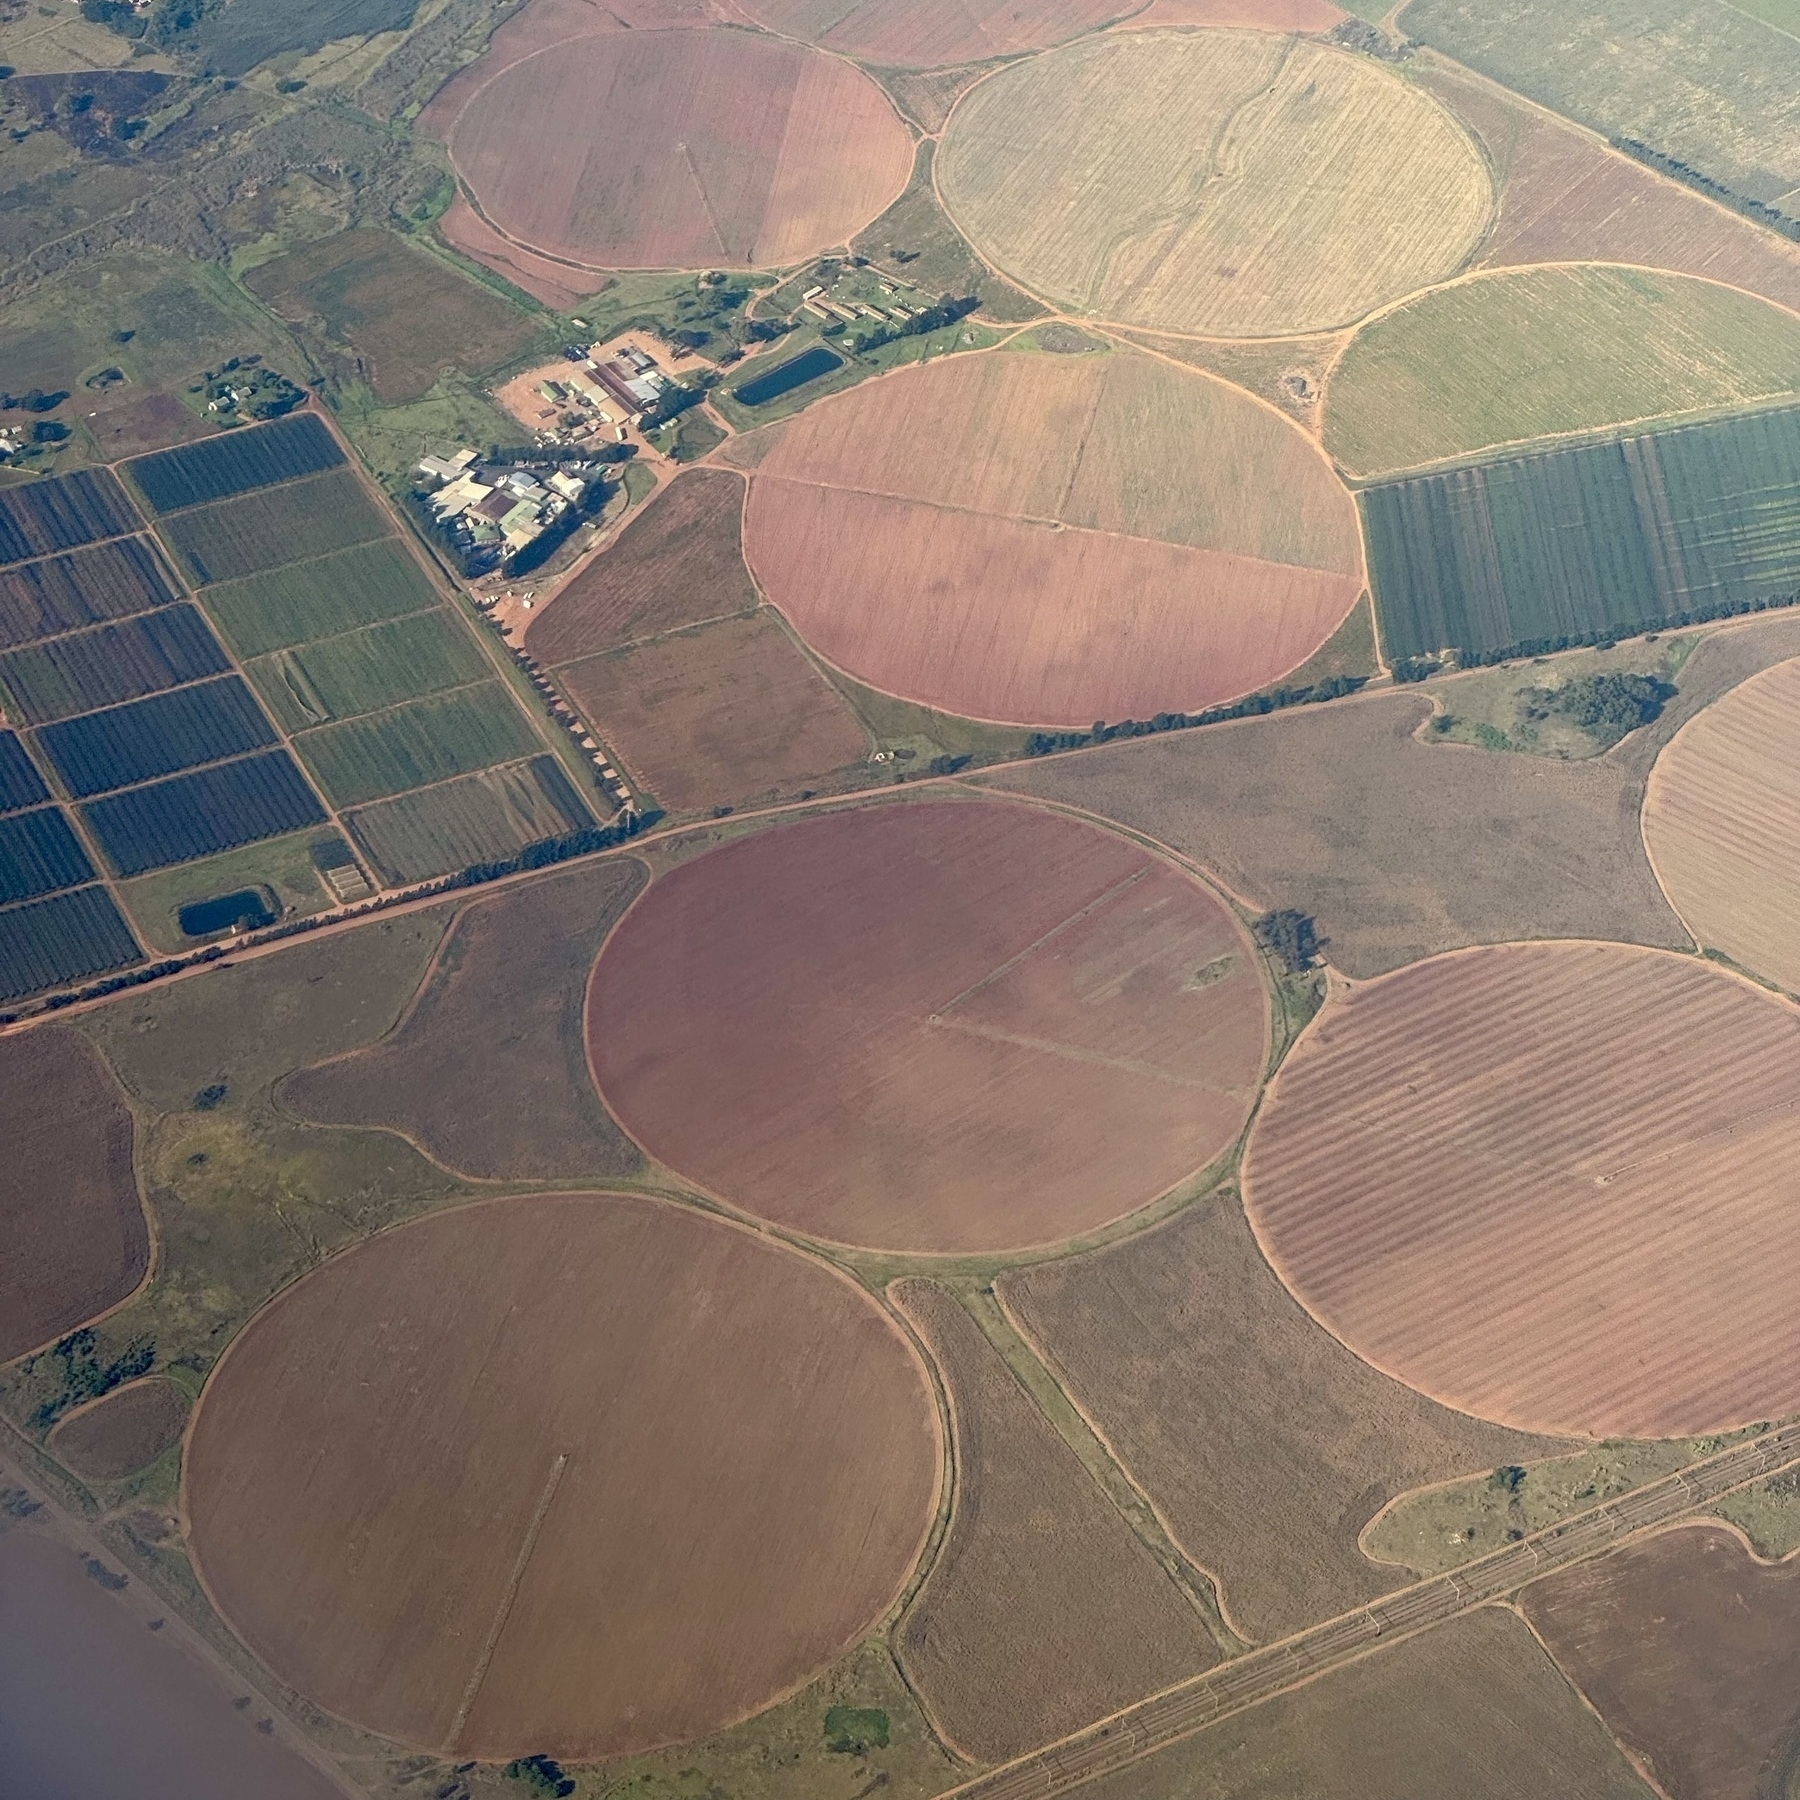 Circular fields seen from a plane.